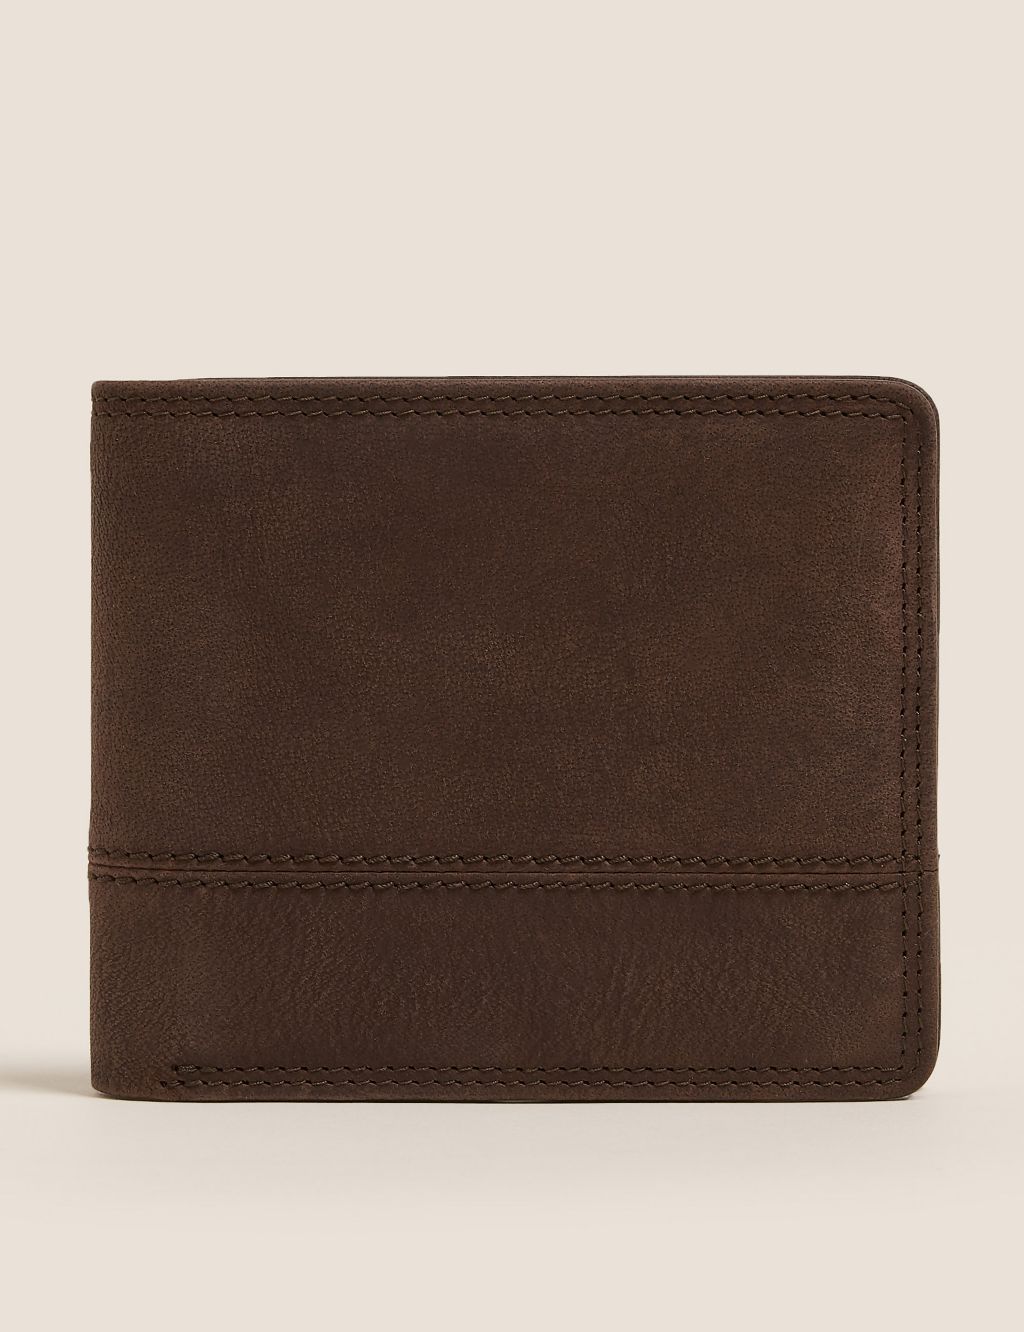 Leather Bi-Fold Cardsafe™ Wallet image 4